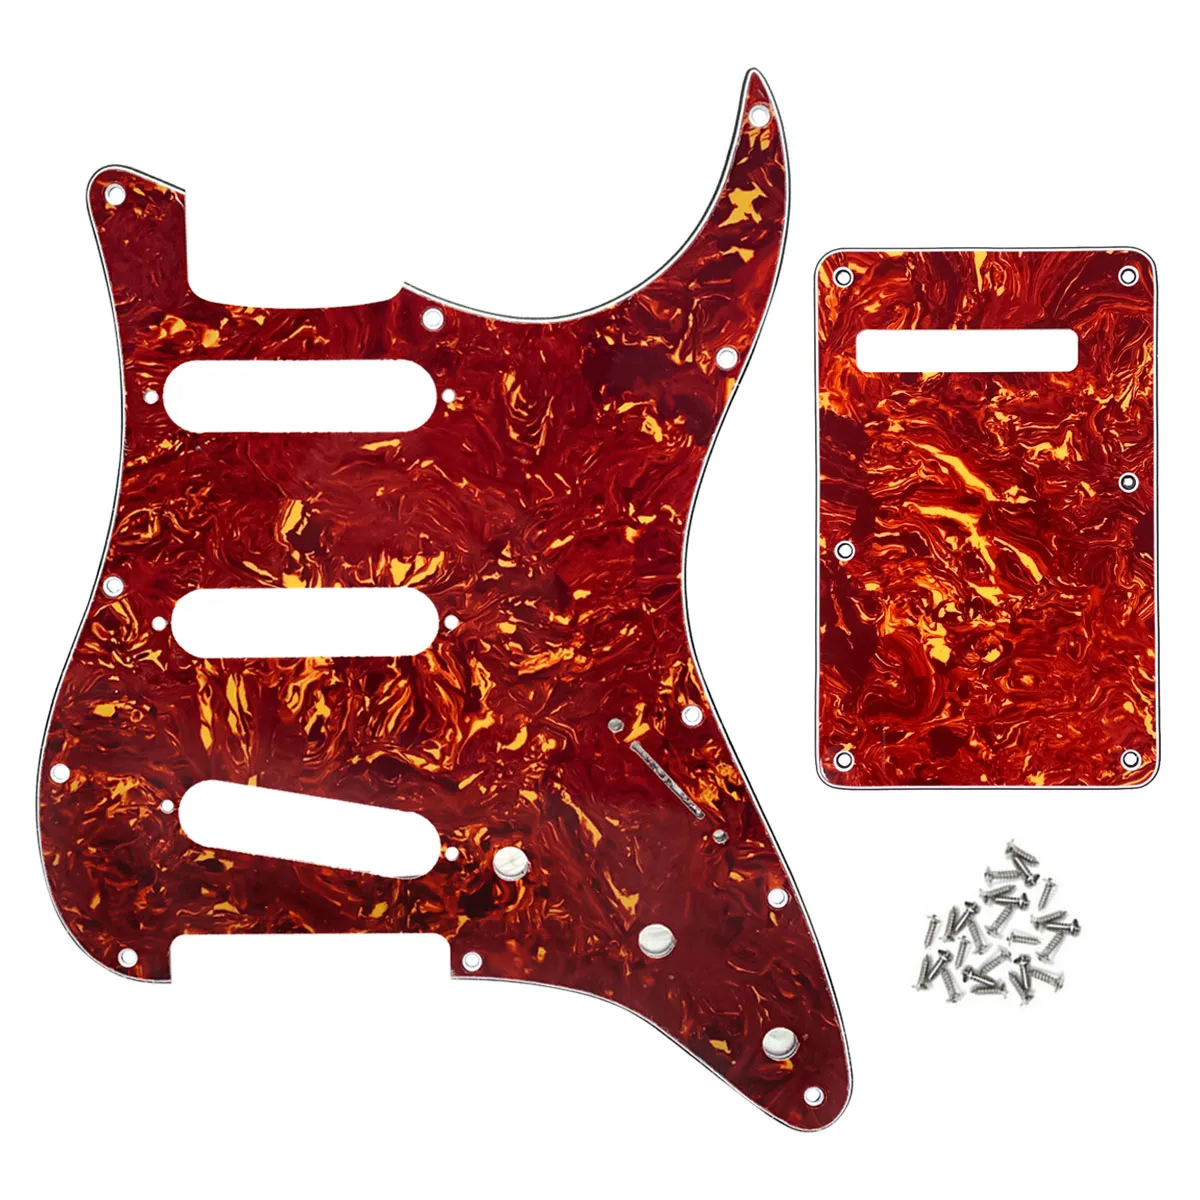 11 håls SSS PickGuard Scratch Plate Back Plate Set för elgitarrtillbehörsdelar